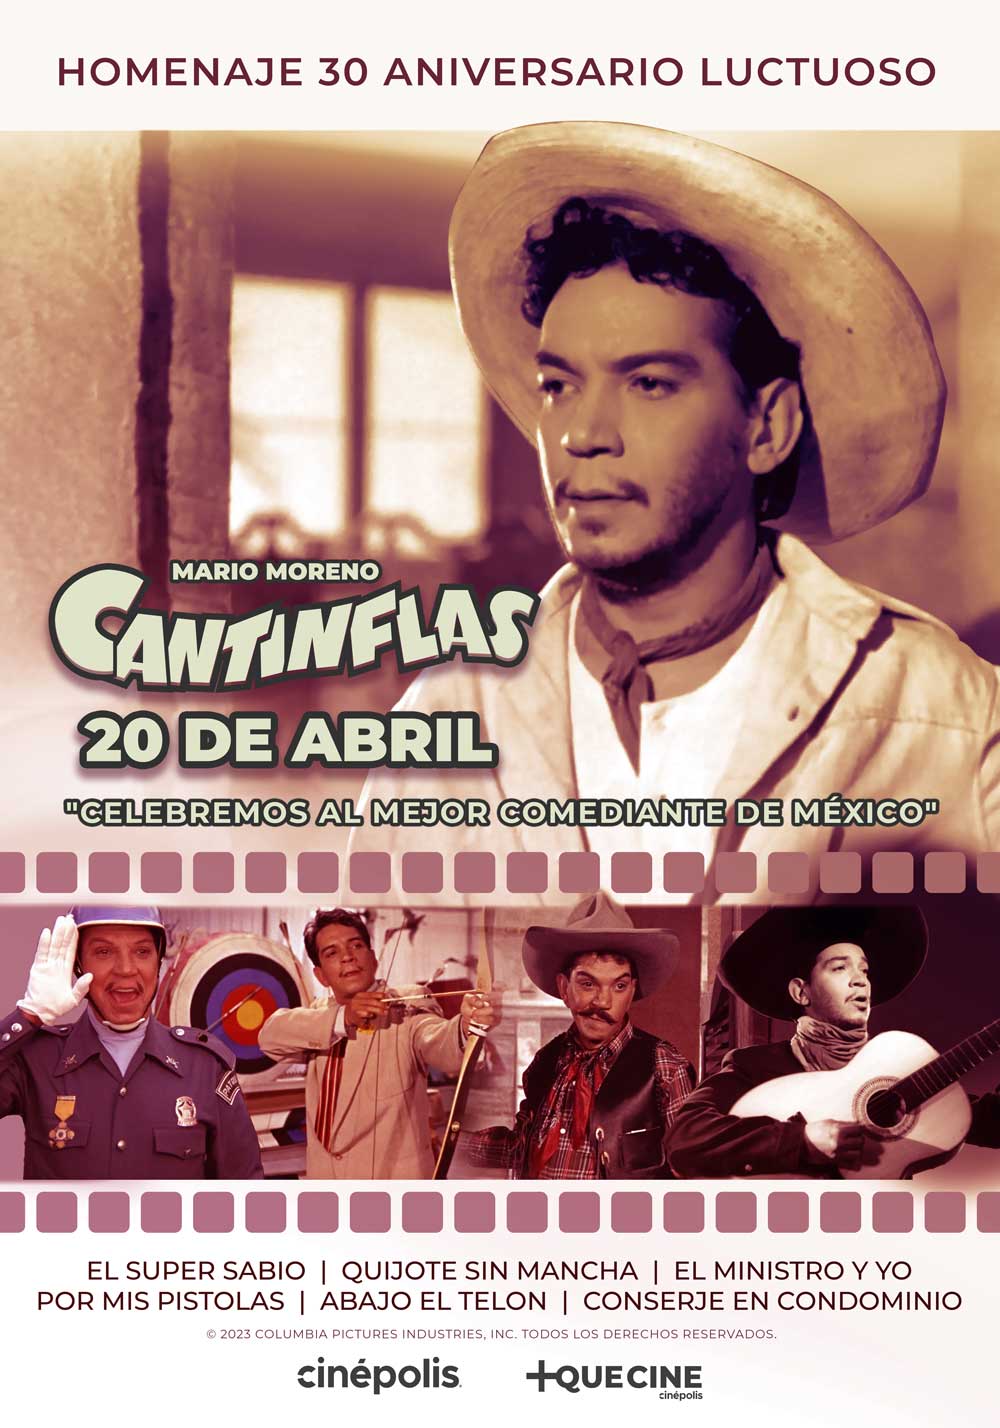 Cinépolis brinda un Homenaje a Mario Moreno "Cantinflas" 13